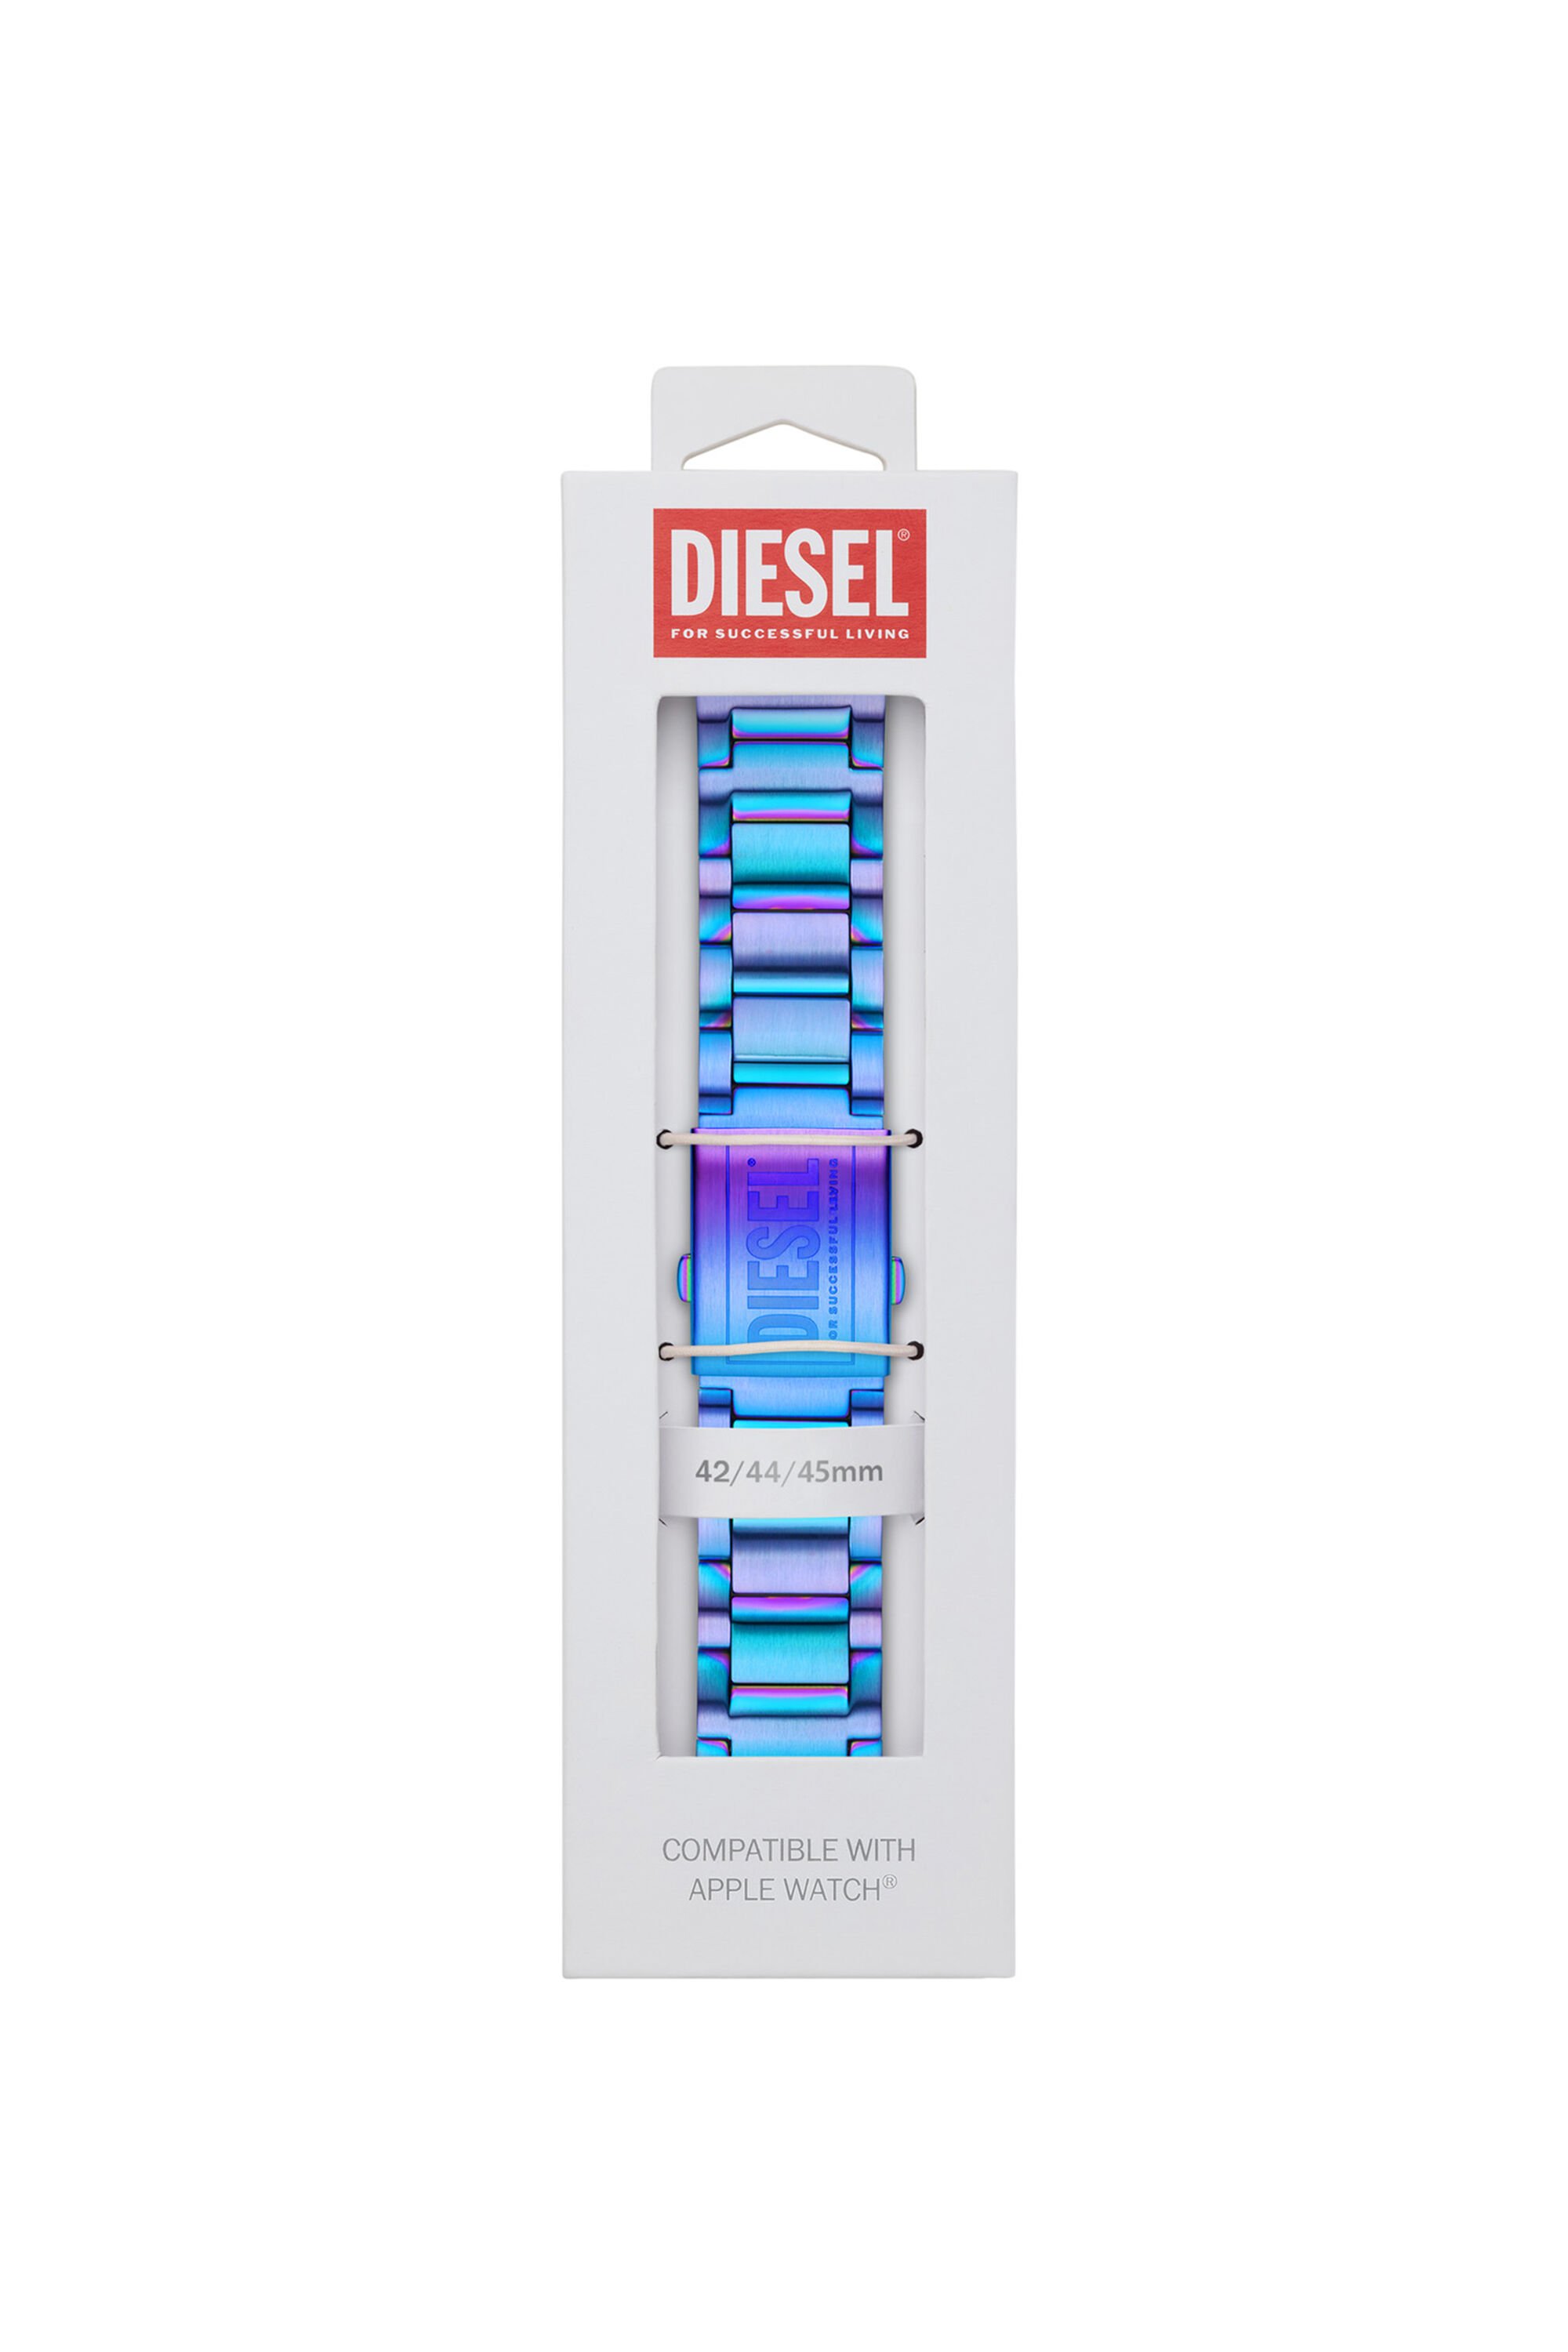 Diesel - DSS007, Blue - Image 2